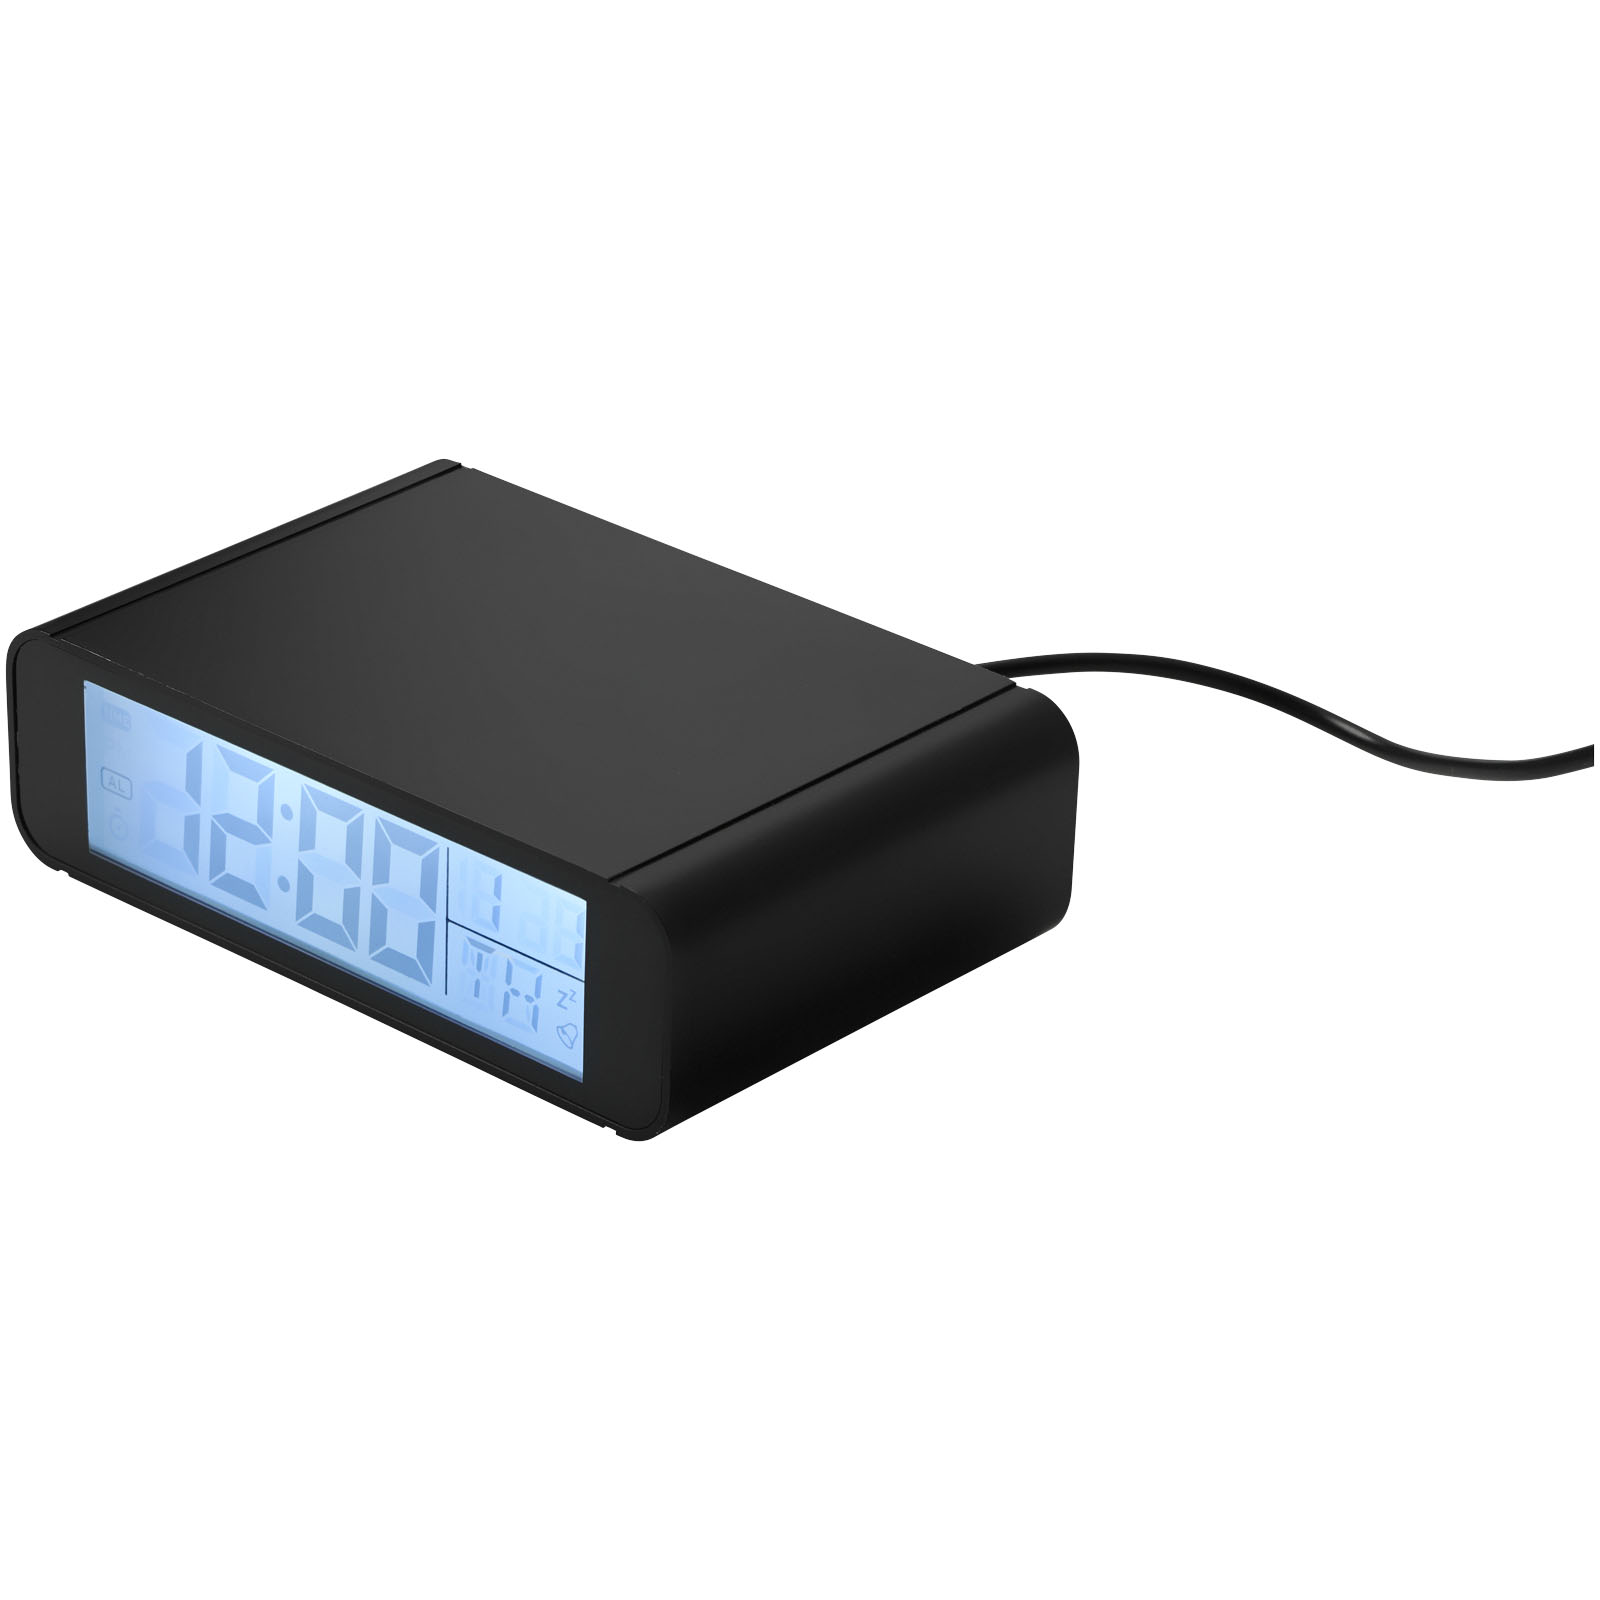 Chargeurs sans fil publicitaires - Horloge avec chargeur à induction de 5 W  Seconds